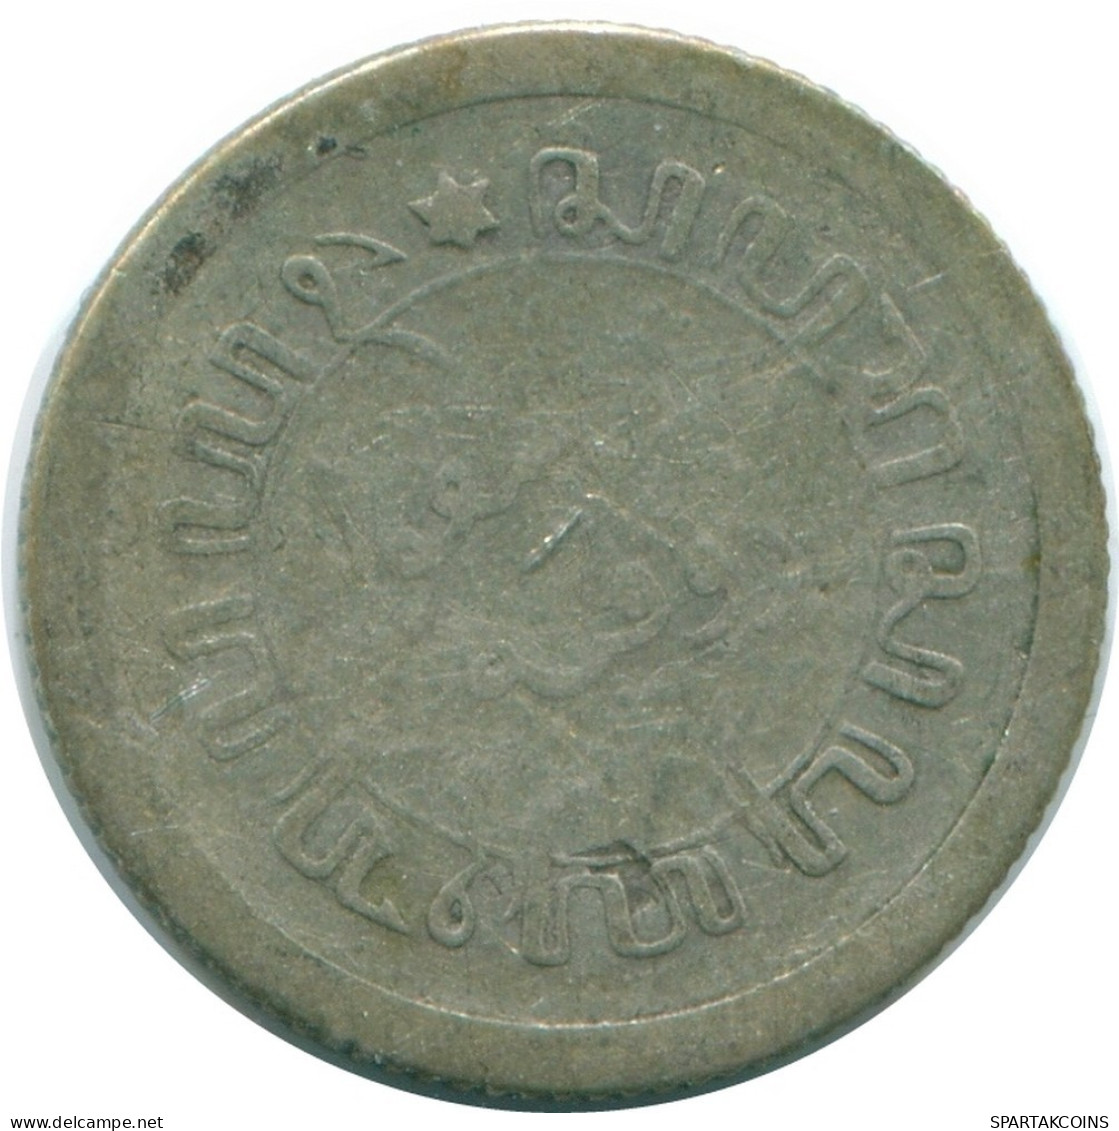 1/10 GULDEN 1912 NETHERLANDS EAST INDIES SILVER Colonial Coin #NL13264.3.U.A - Niederländisch-Indien